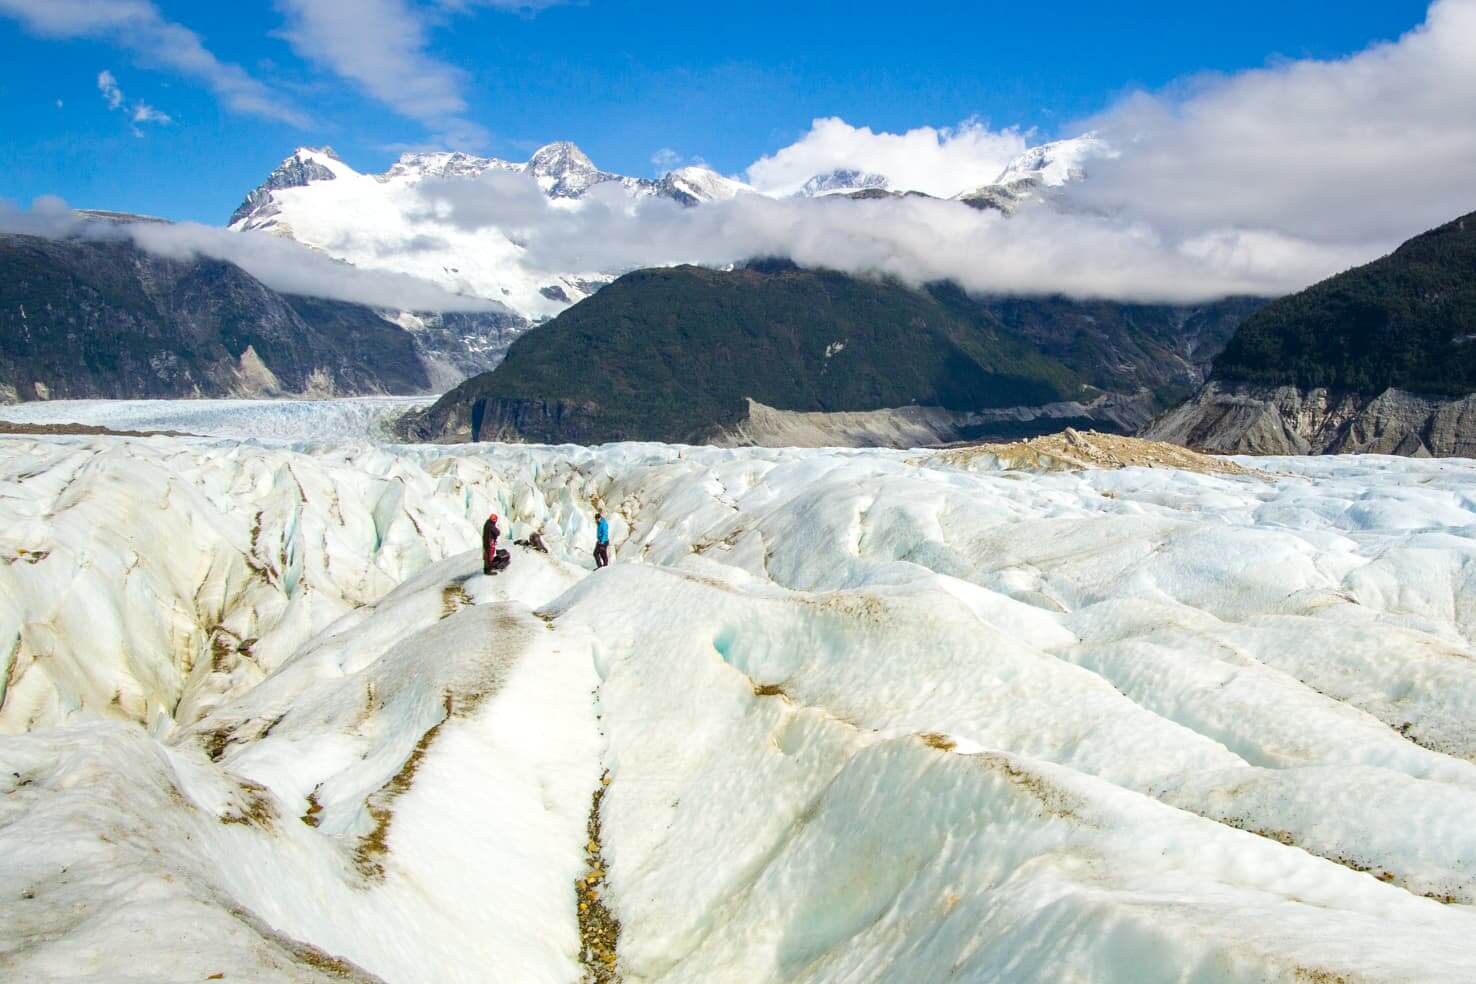 Exploradores Glacier - Road trip guide to Carretera Austral in Chile